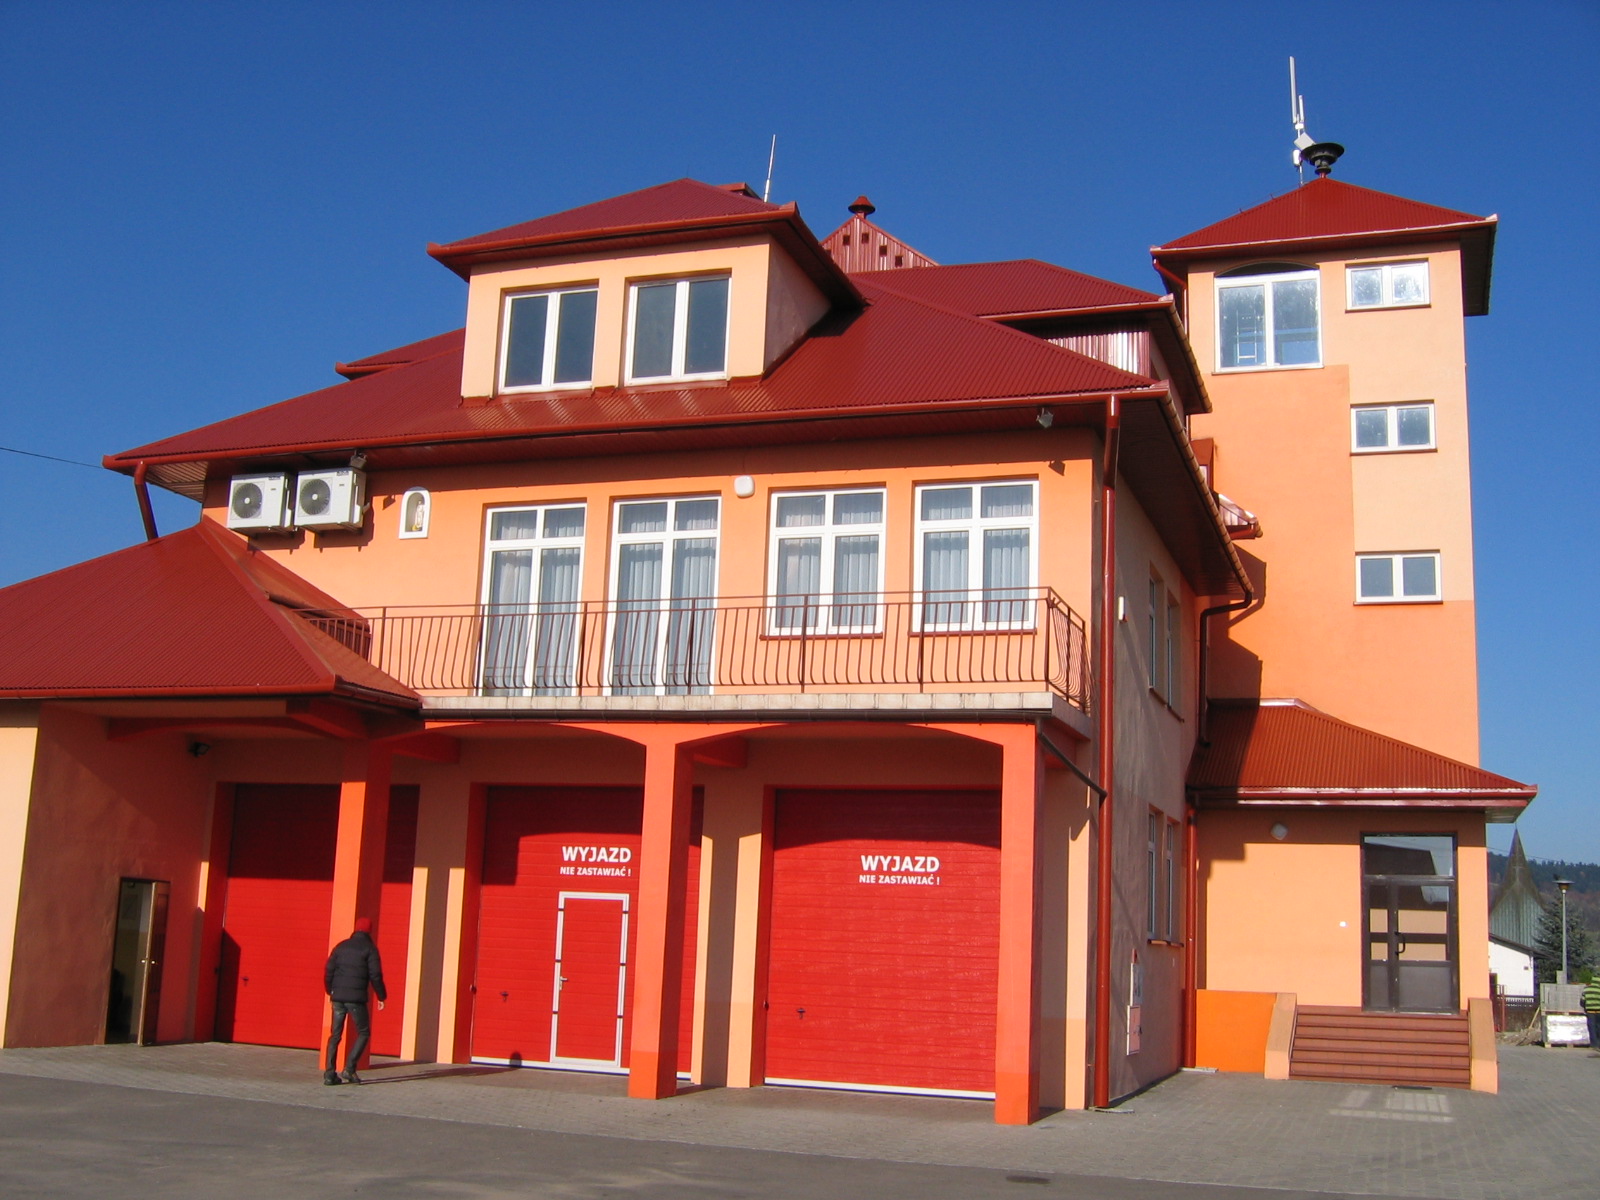 Budynek remiozy strażackiej w Niskowej - pomarańczowy 2 piętrowy budynek ze spadzistym czerwonym dachem. Na zdjęciu widoczne 3 czerwone bramy garażowe oraz wejście do budynku, po prawej stronie budynku widoczna wieża obnserwacyjna, przed budynkiem podjazd, w tle niebieskie niebo